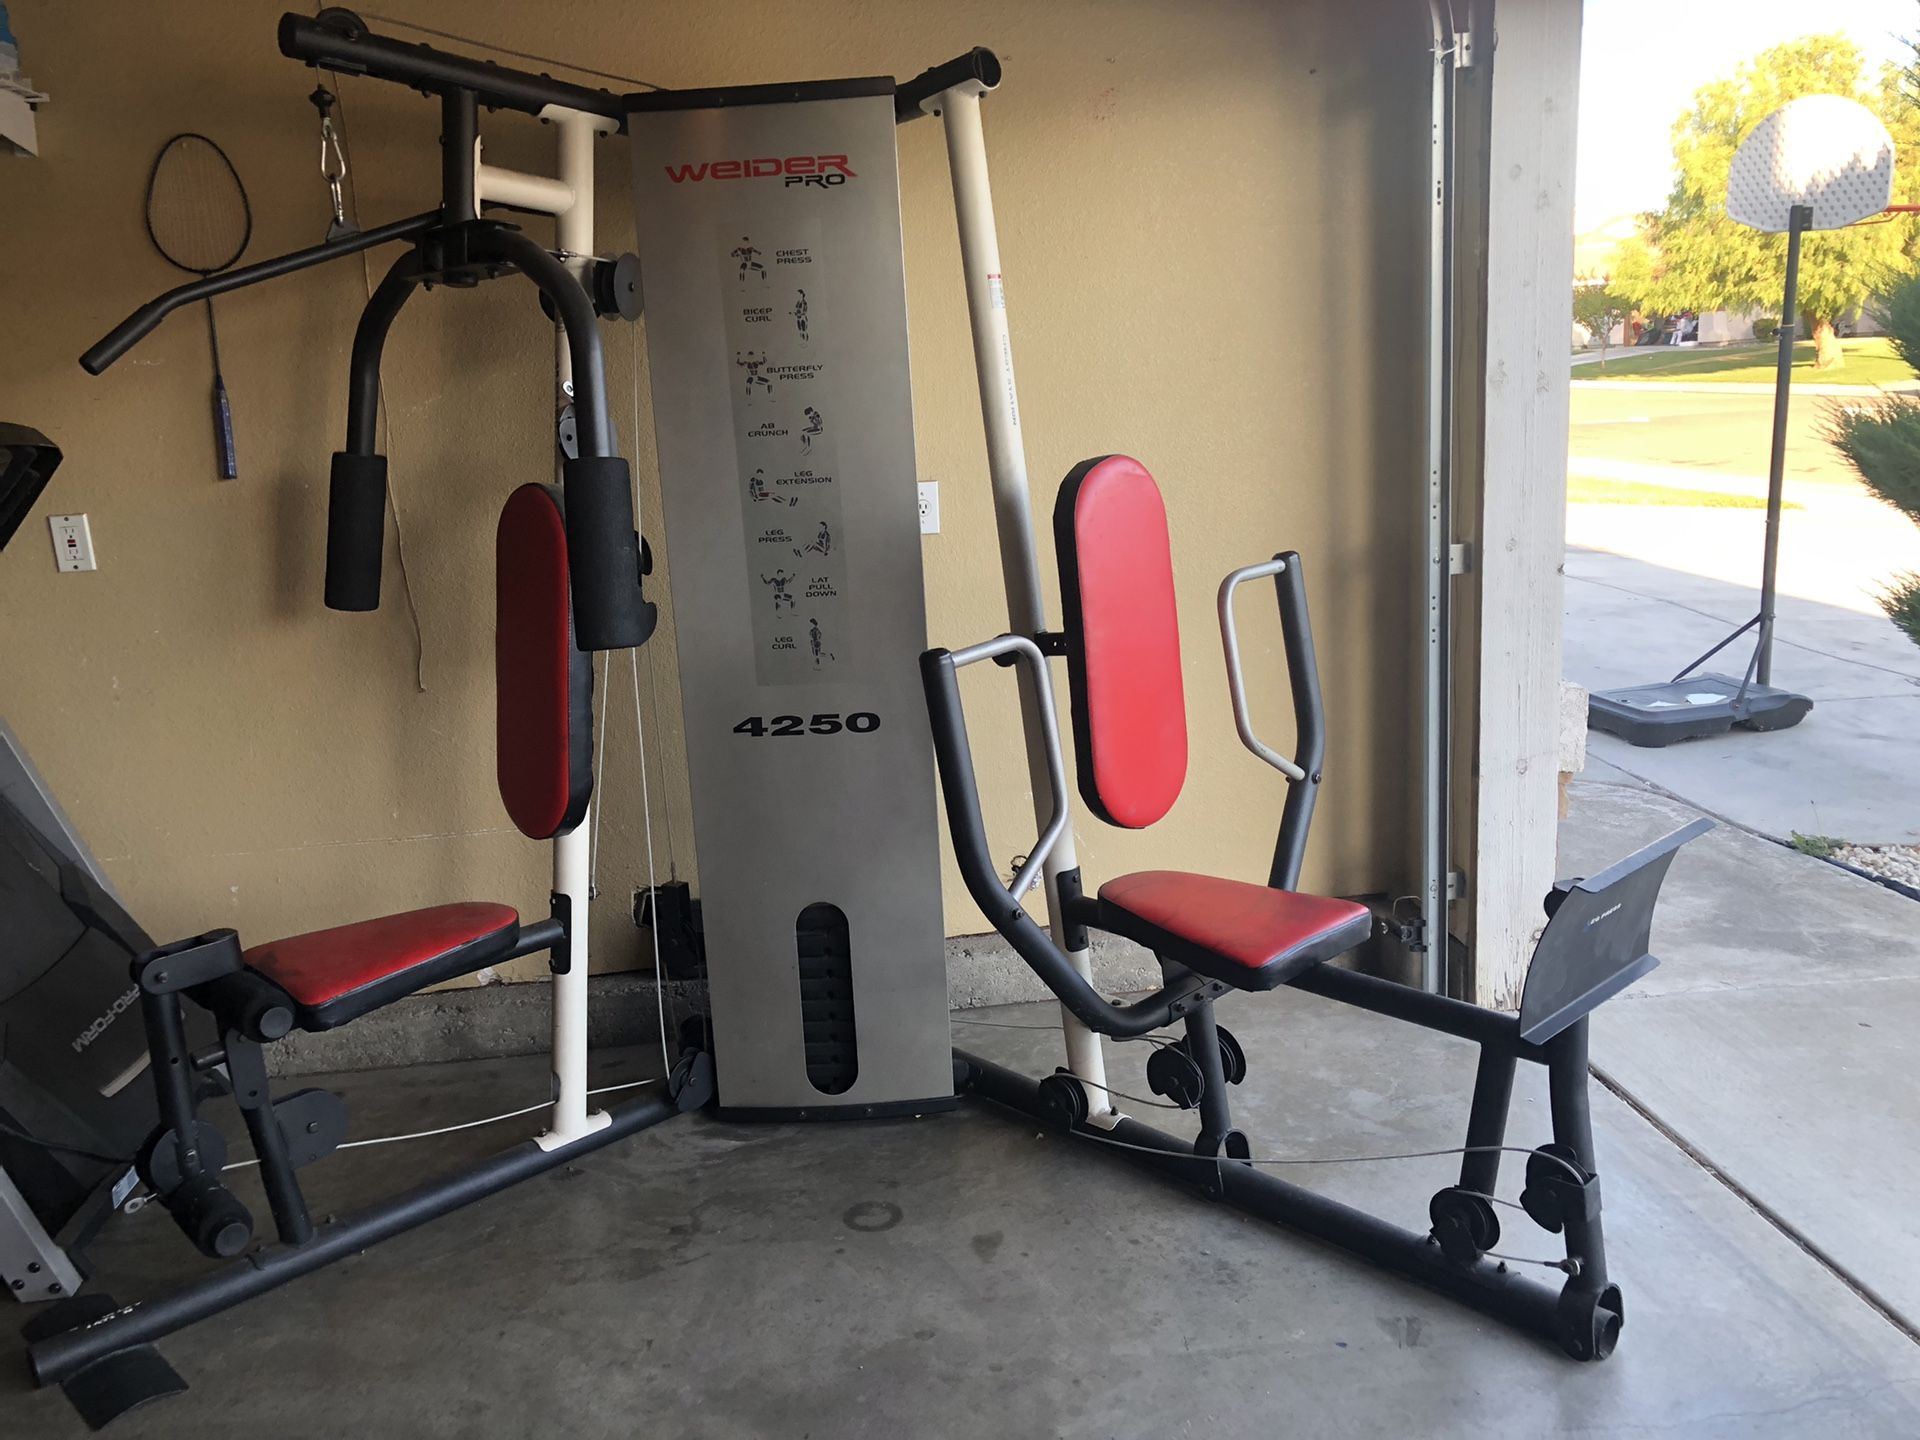 Weider pro 4250 home gym weight machine weight system